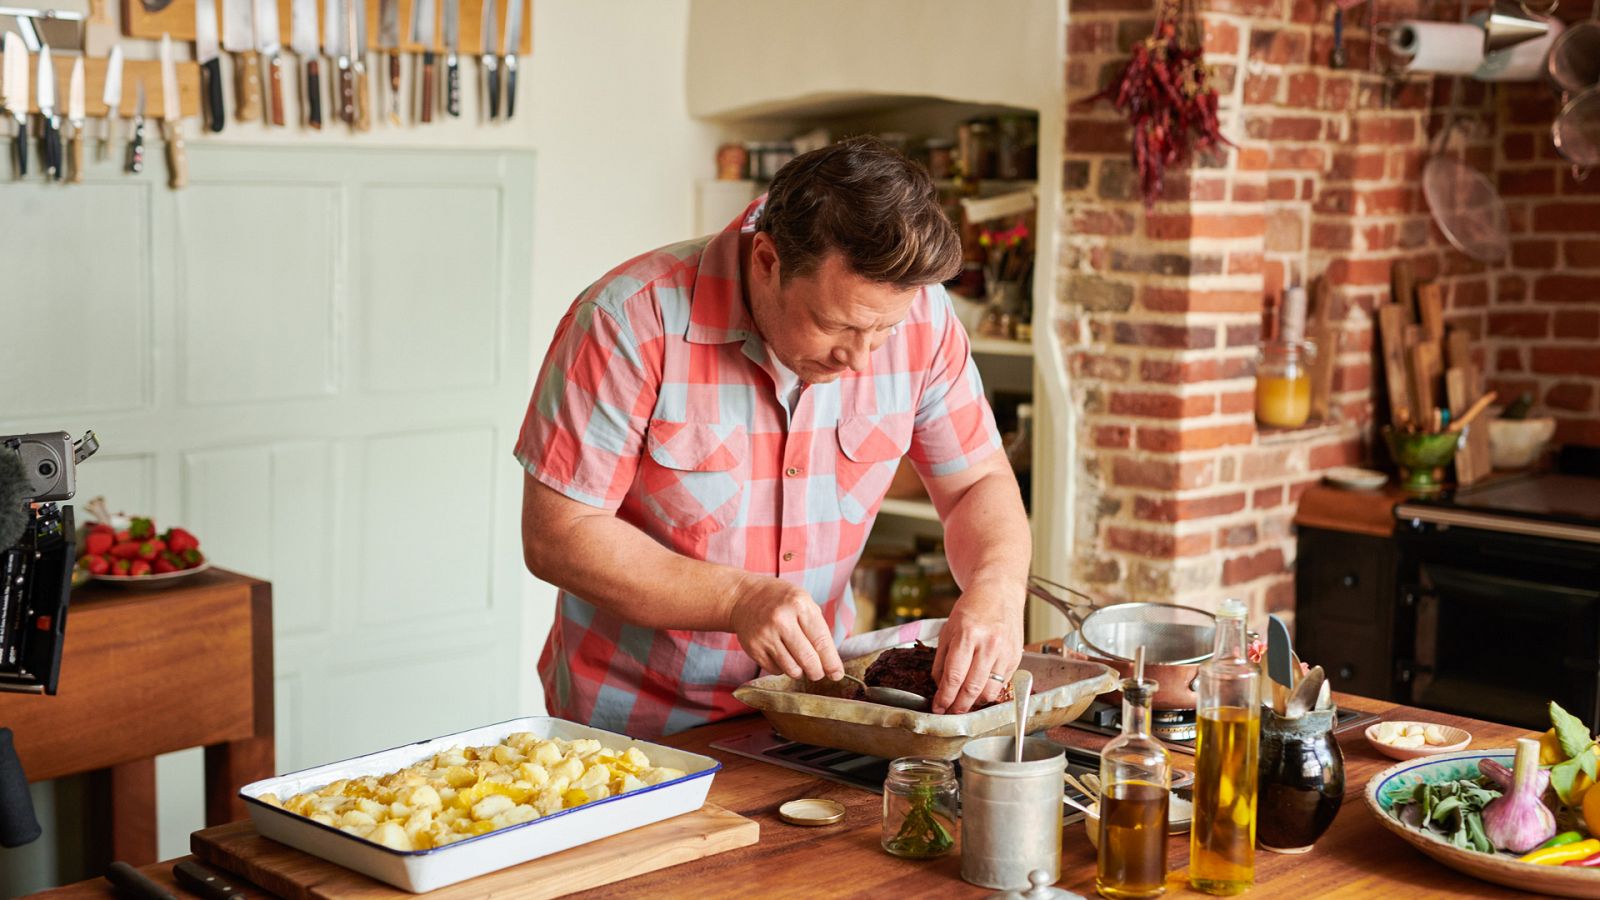 Jamie Oliver - Juntos de nuevo - Episodio 1: Comida de celebración